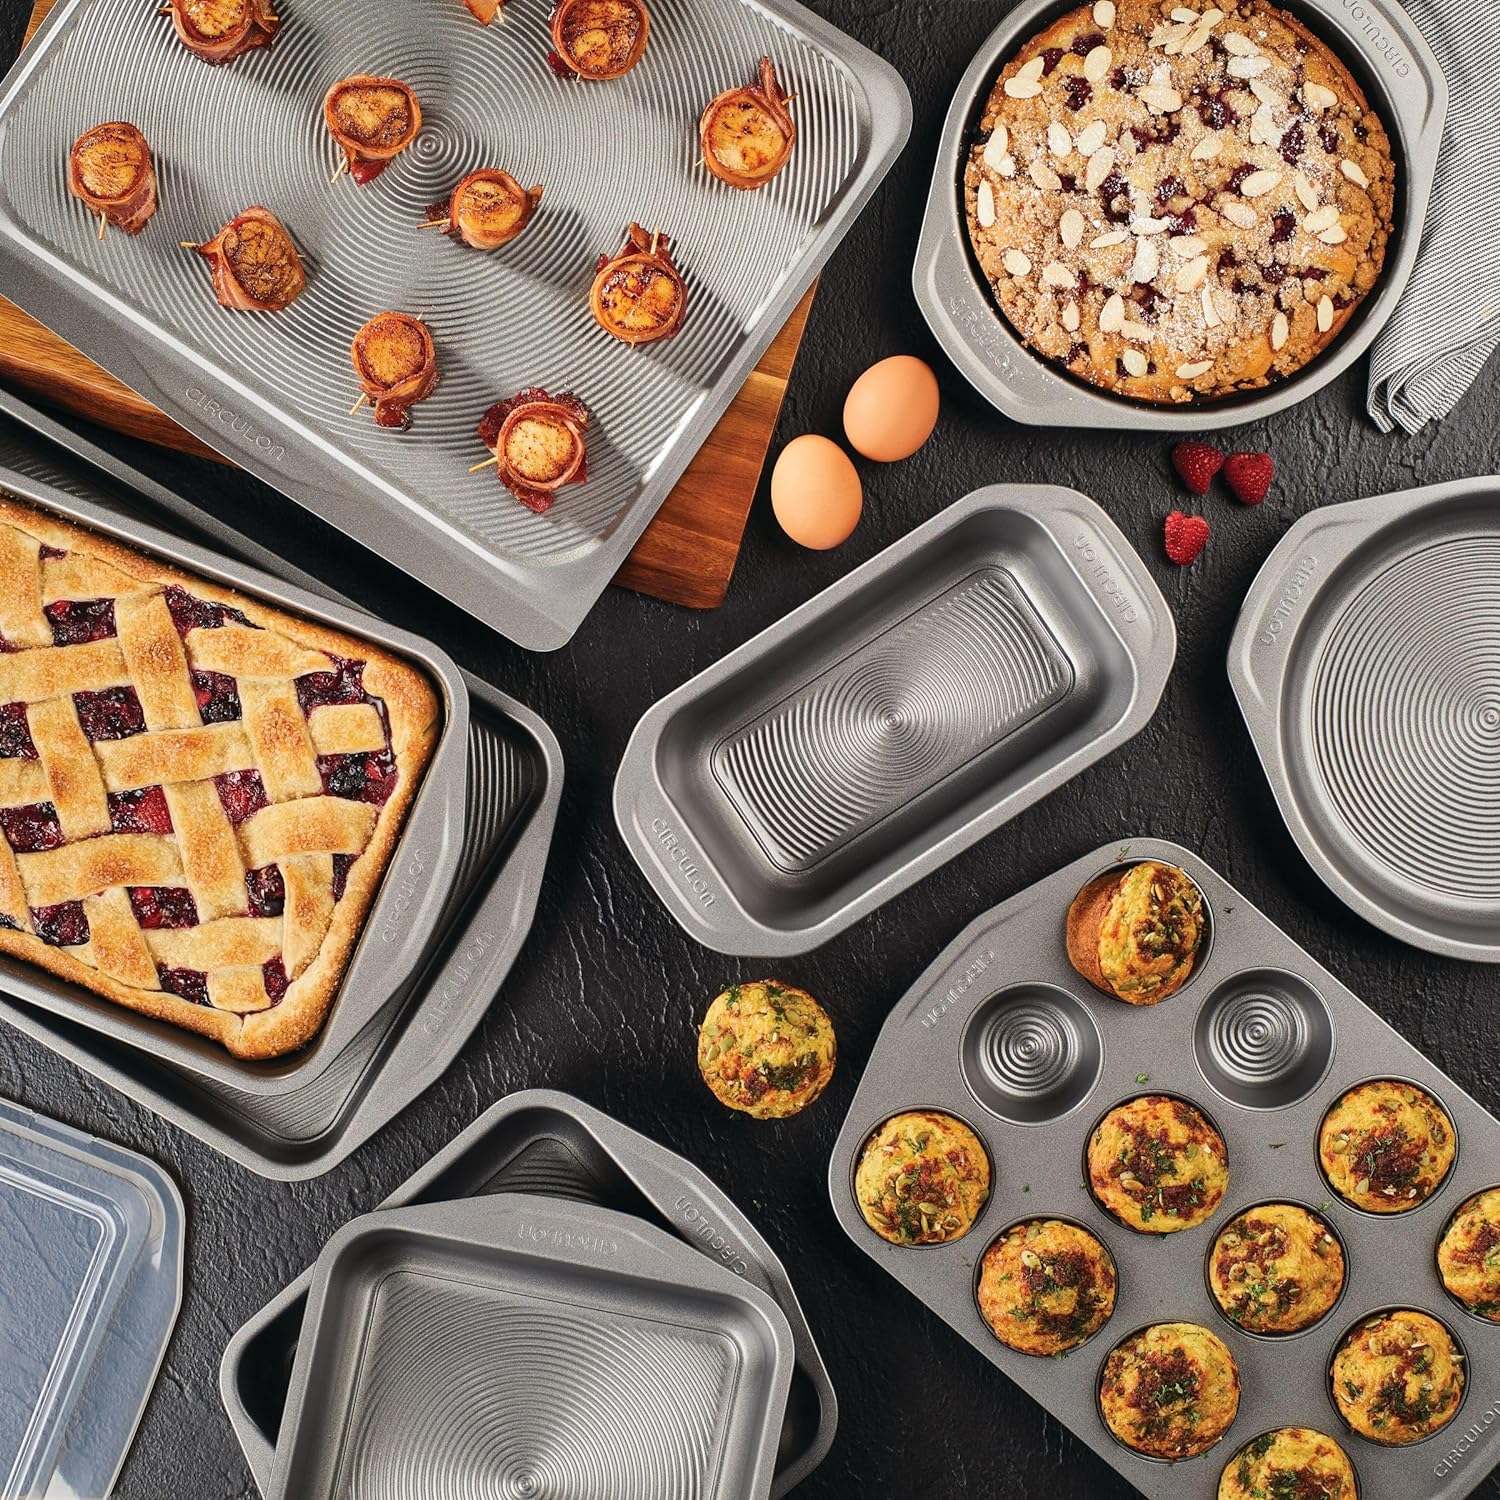 https://bigbigmart.com/wp-content/uploads/2023/10/Circulon-Total-Nonstick-Bakeware-Set-with-Nonstick-Bread-Pan-Cookie-Sheet-Baking-Pan-Baking-Sheet-Cake-Pan-and-Muffin-Cupcake-Pan-10-Piece-Gray5.jpg